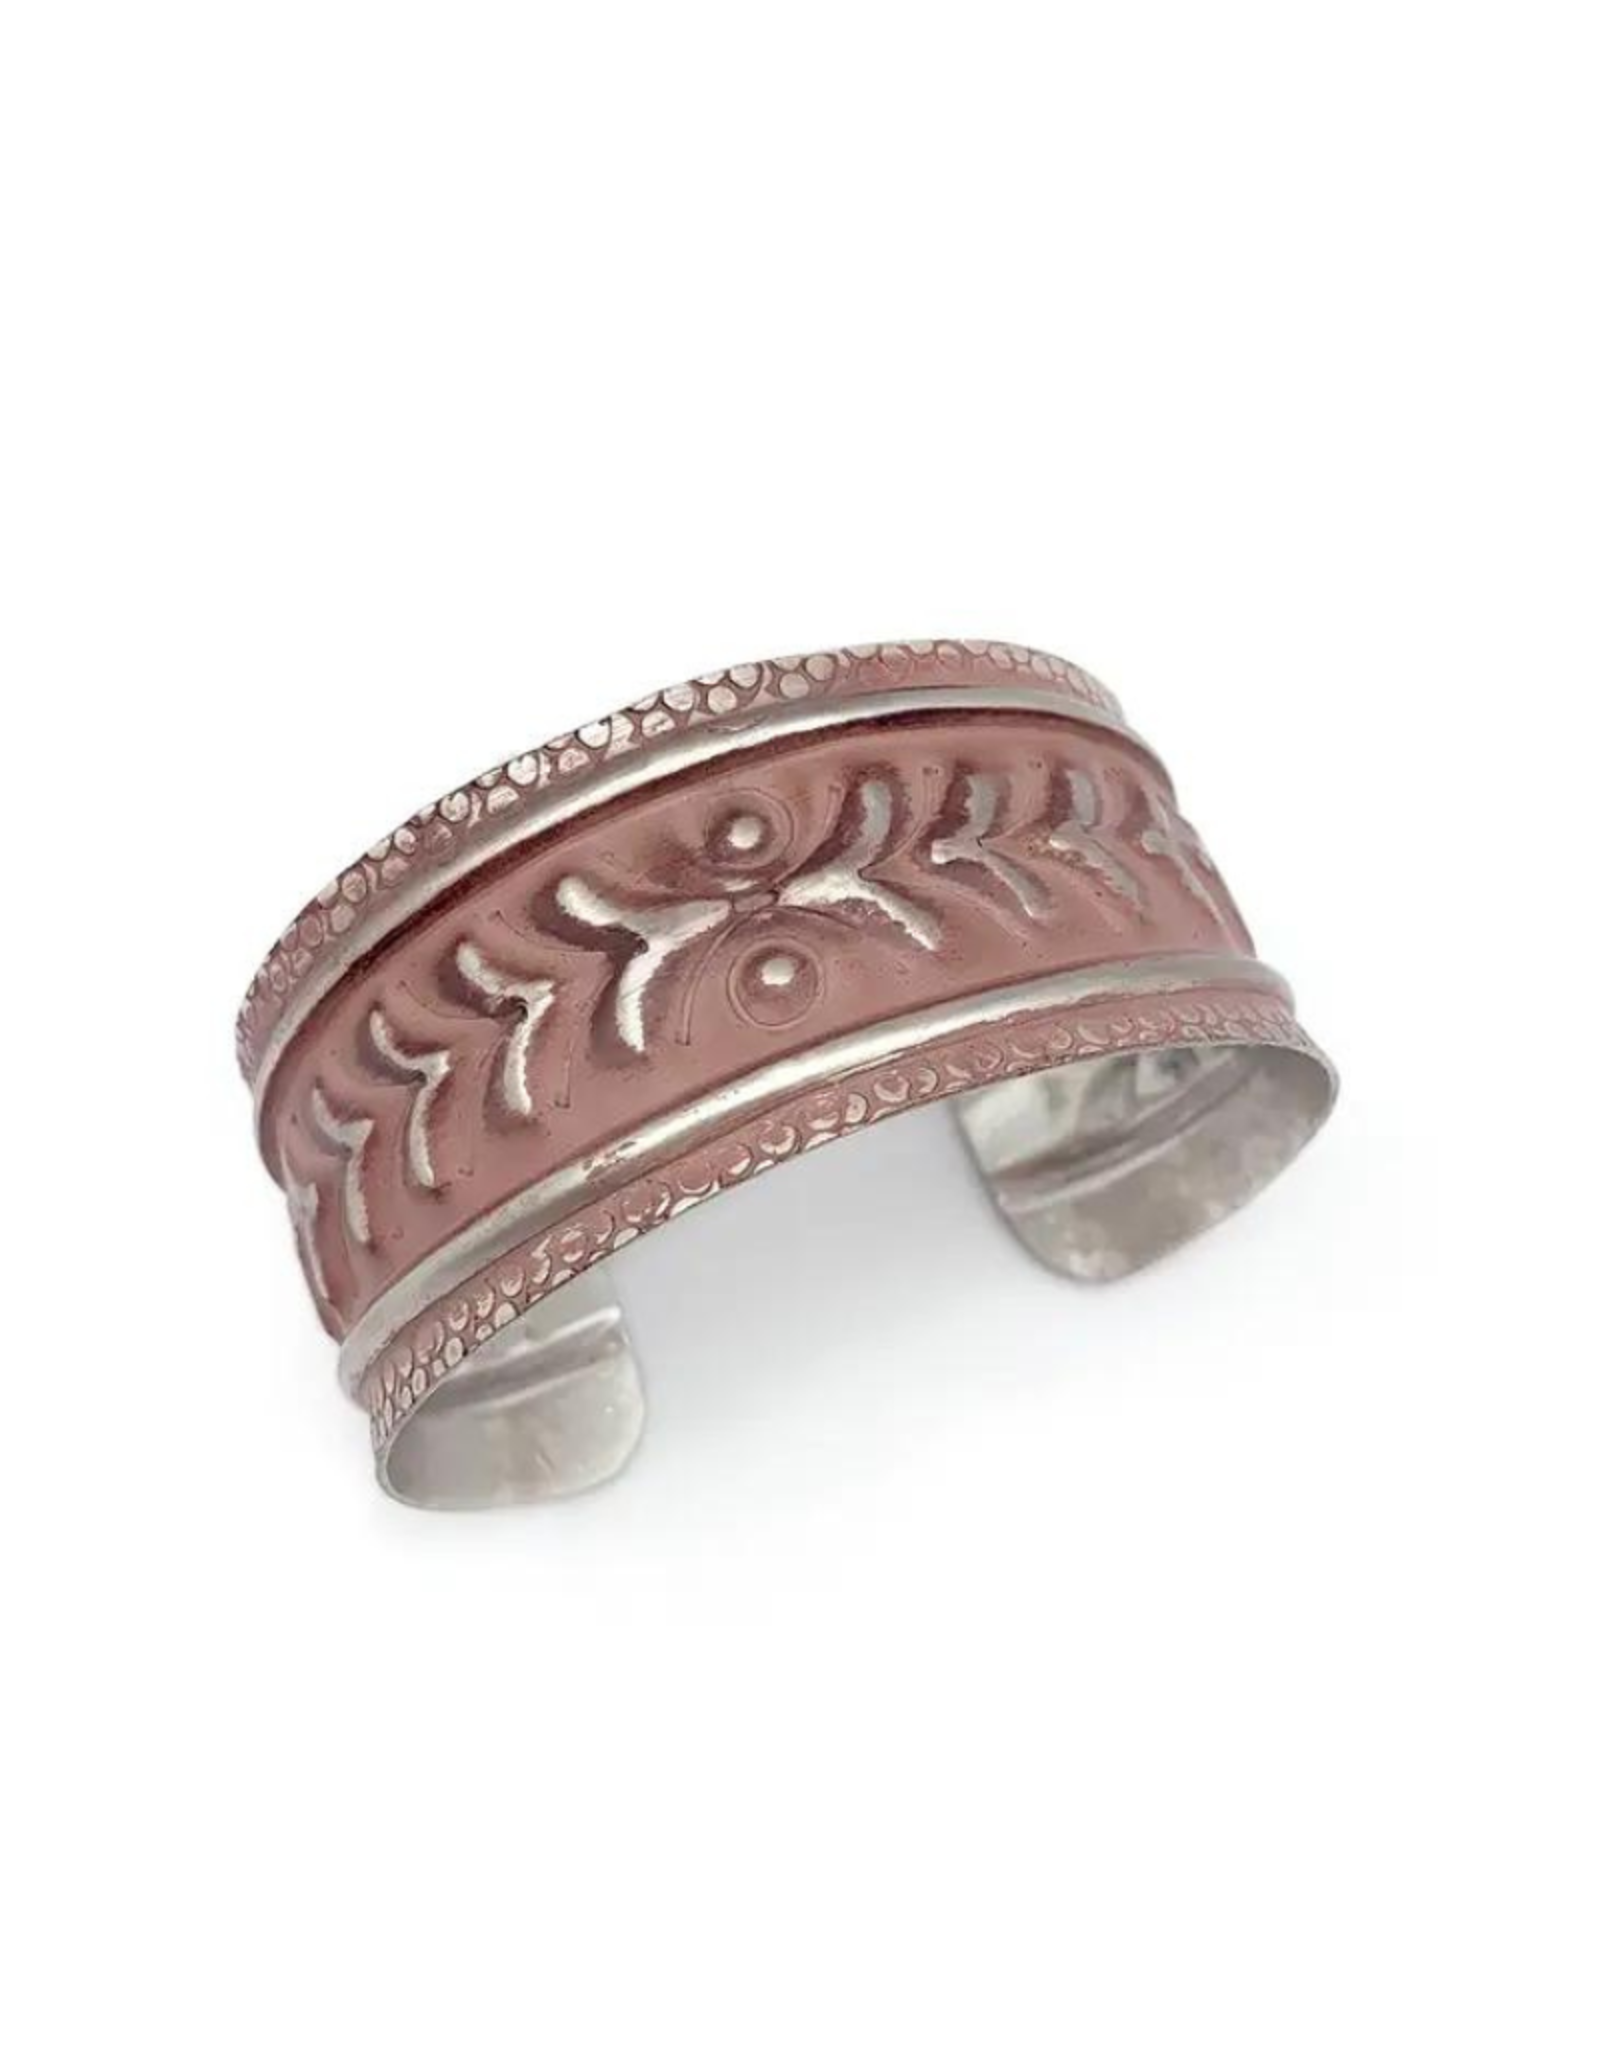 Faire/Anju Jewelry BRACELET CUFF-SILVER PATINA ROSE CHEVRONS